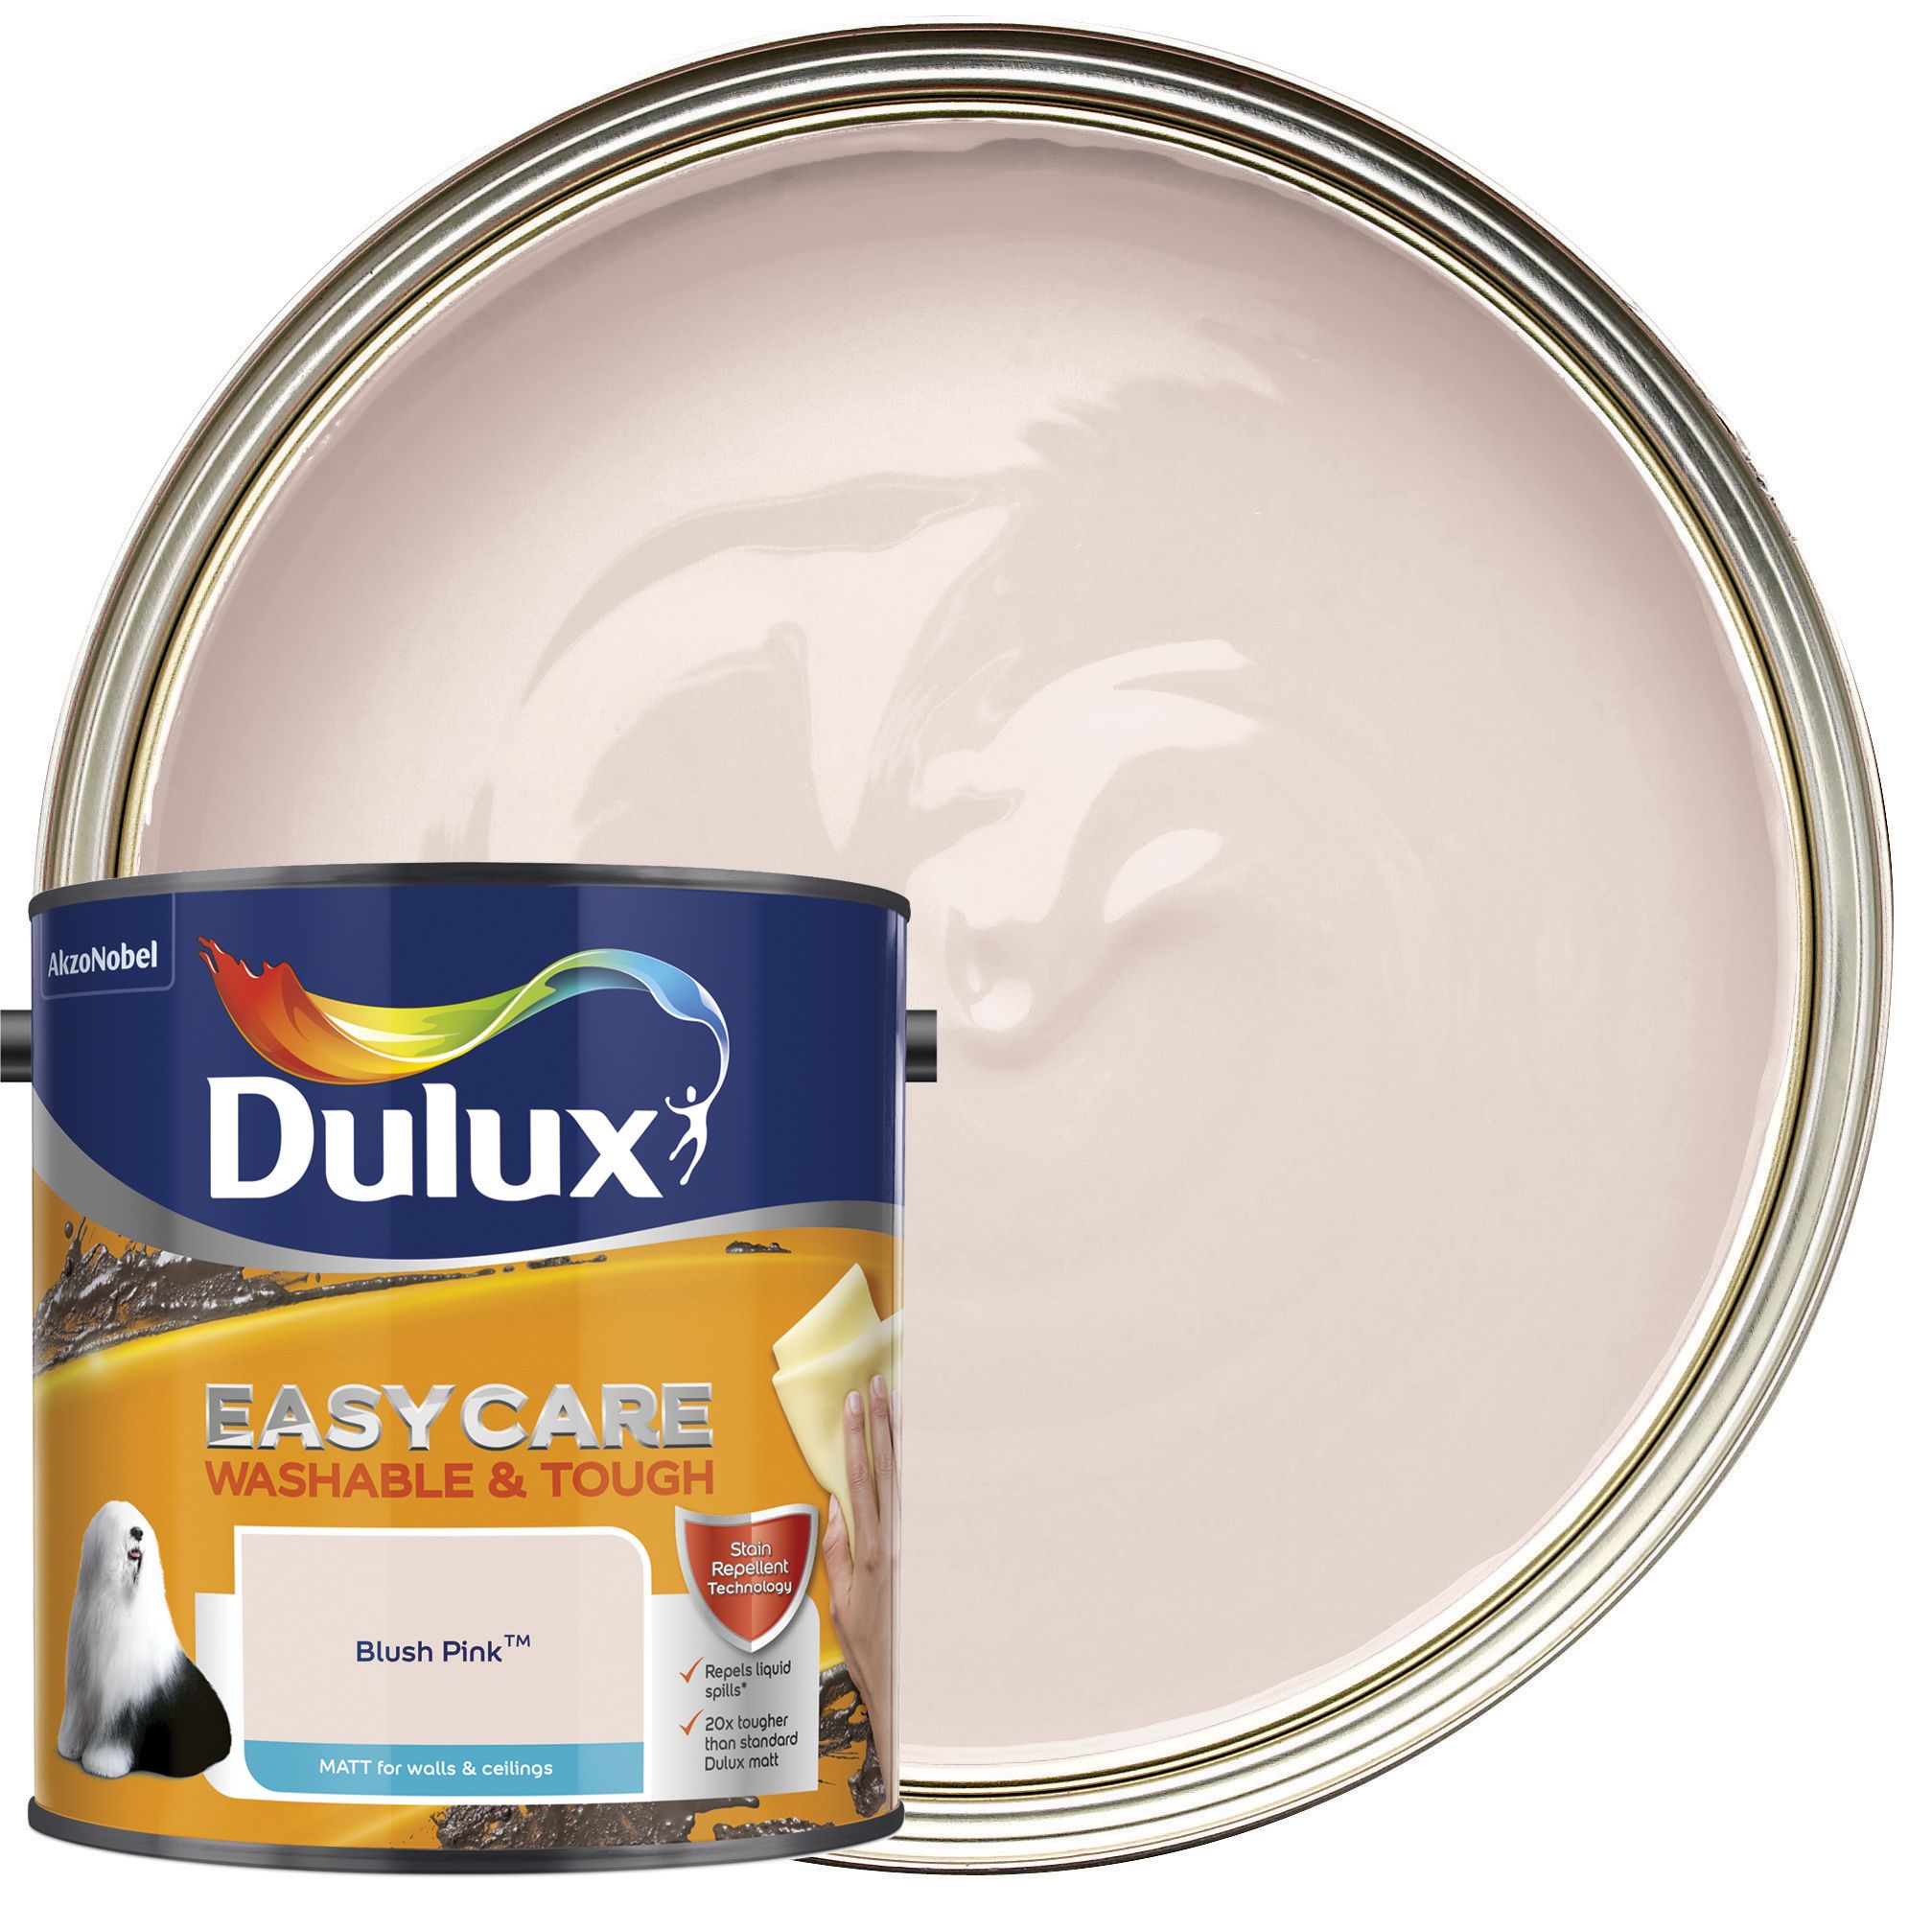 Image of Dulux Easycare Washable & Tough Matt Emulsion Paint - Blush Pink - 2.5L